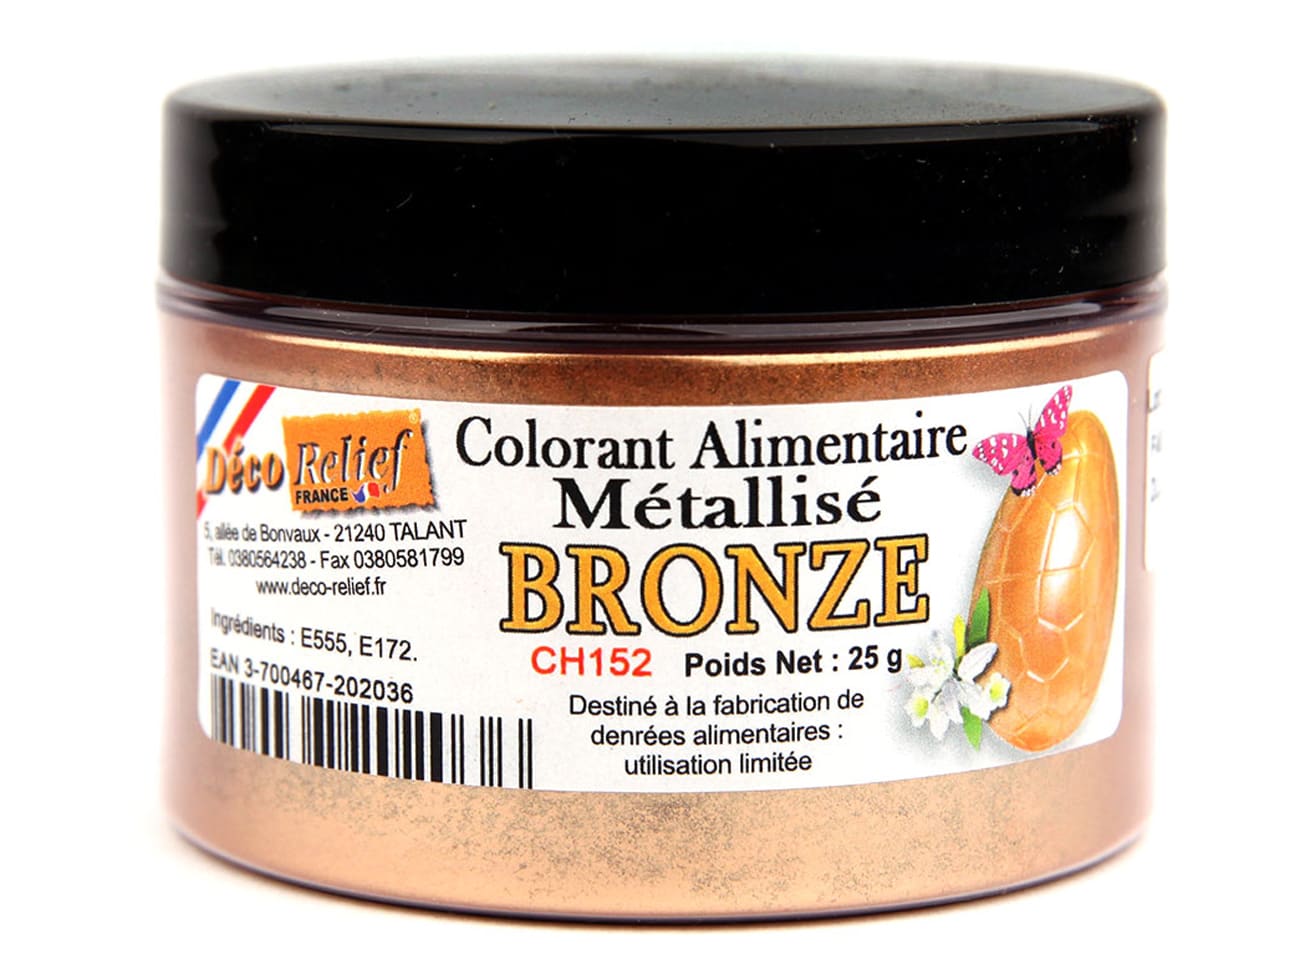 Colorant alimentaire métallisé Bronze - poudre liposoluble - 25 g